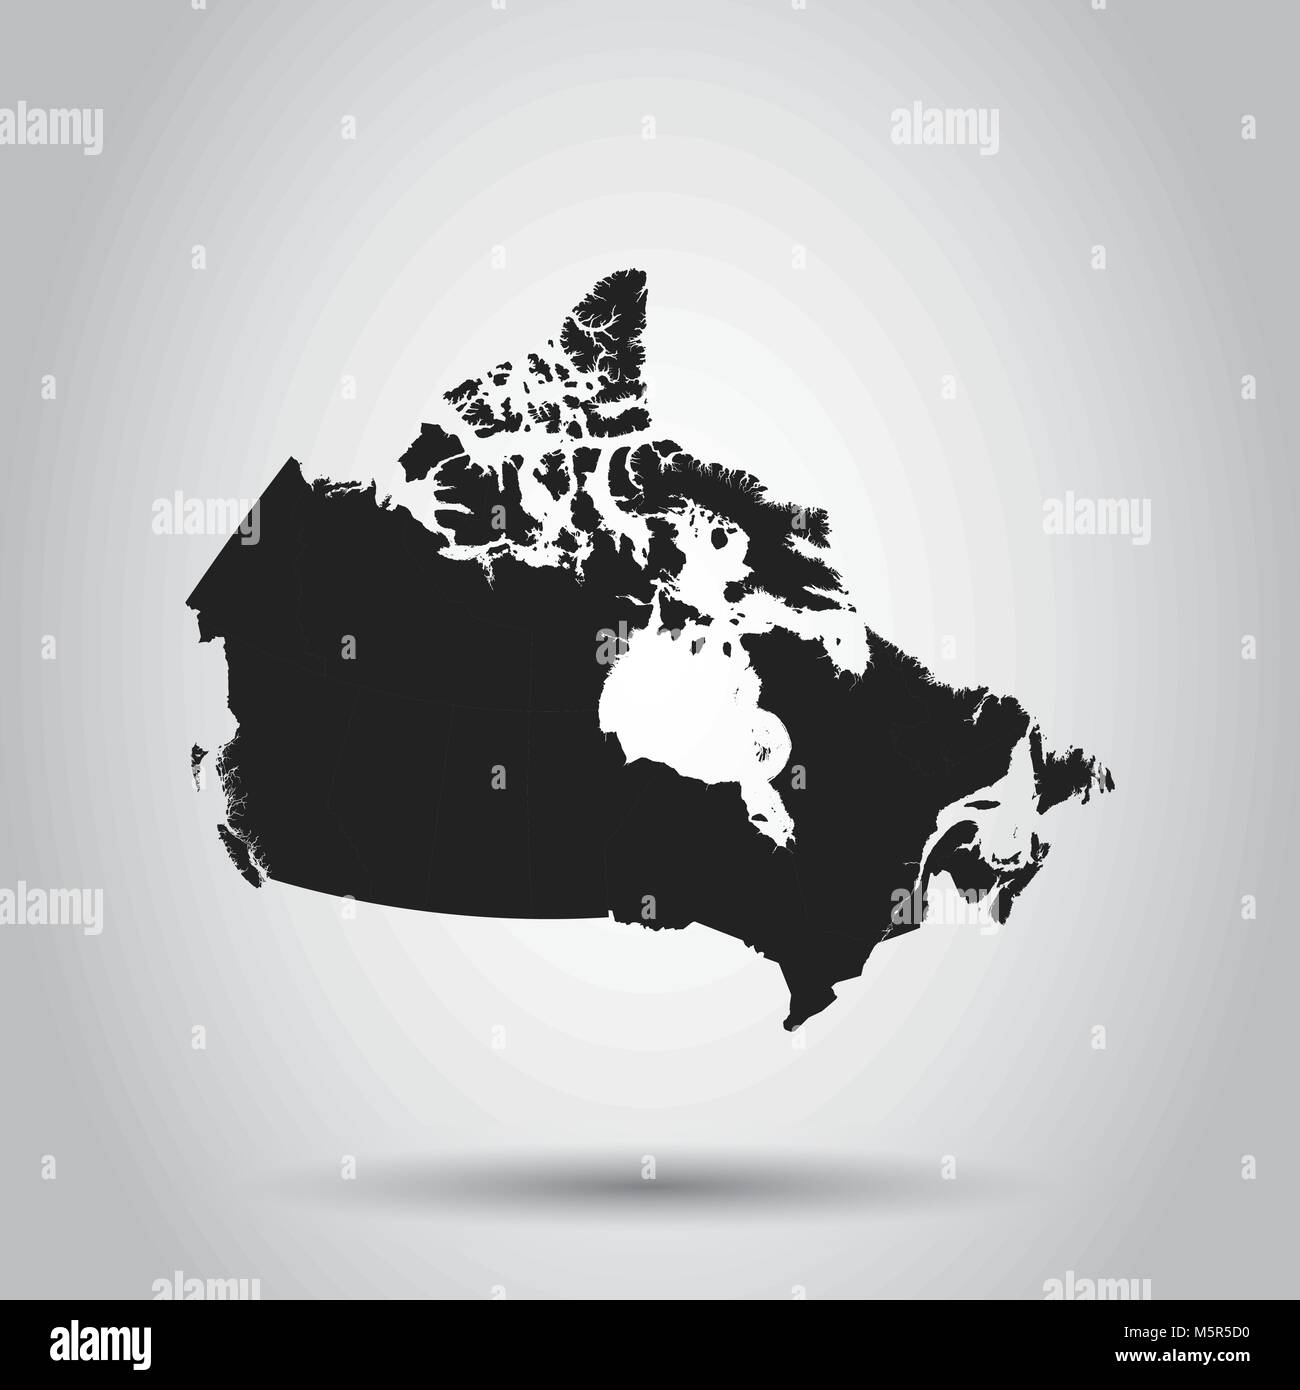 Kanada Karte Symbol. Flache Vector Illustration. Kanada Symbol mit Schatten auf weißem Hintergrund. Stock Vektor